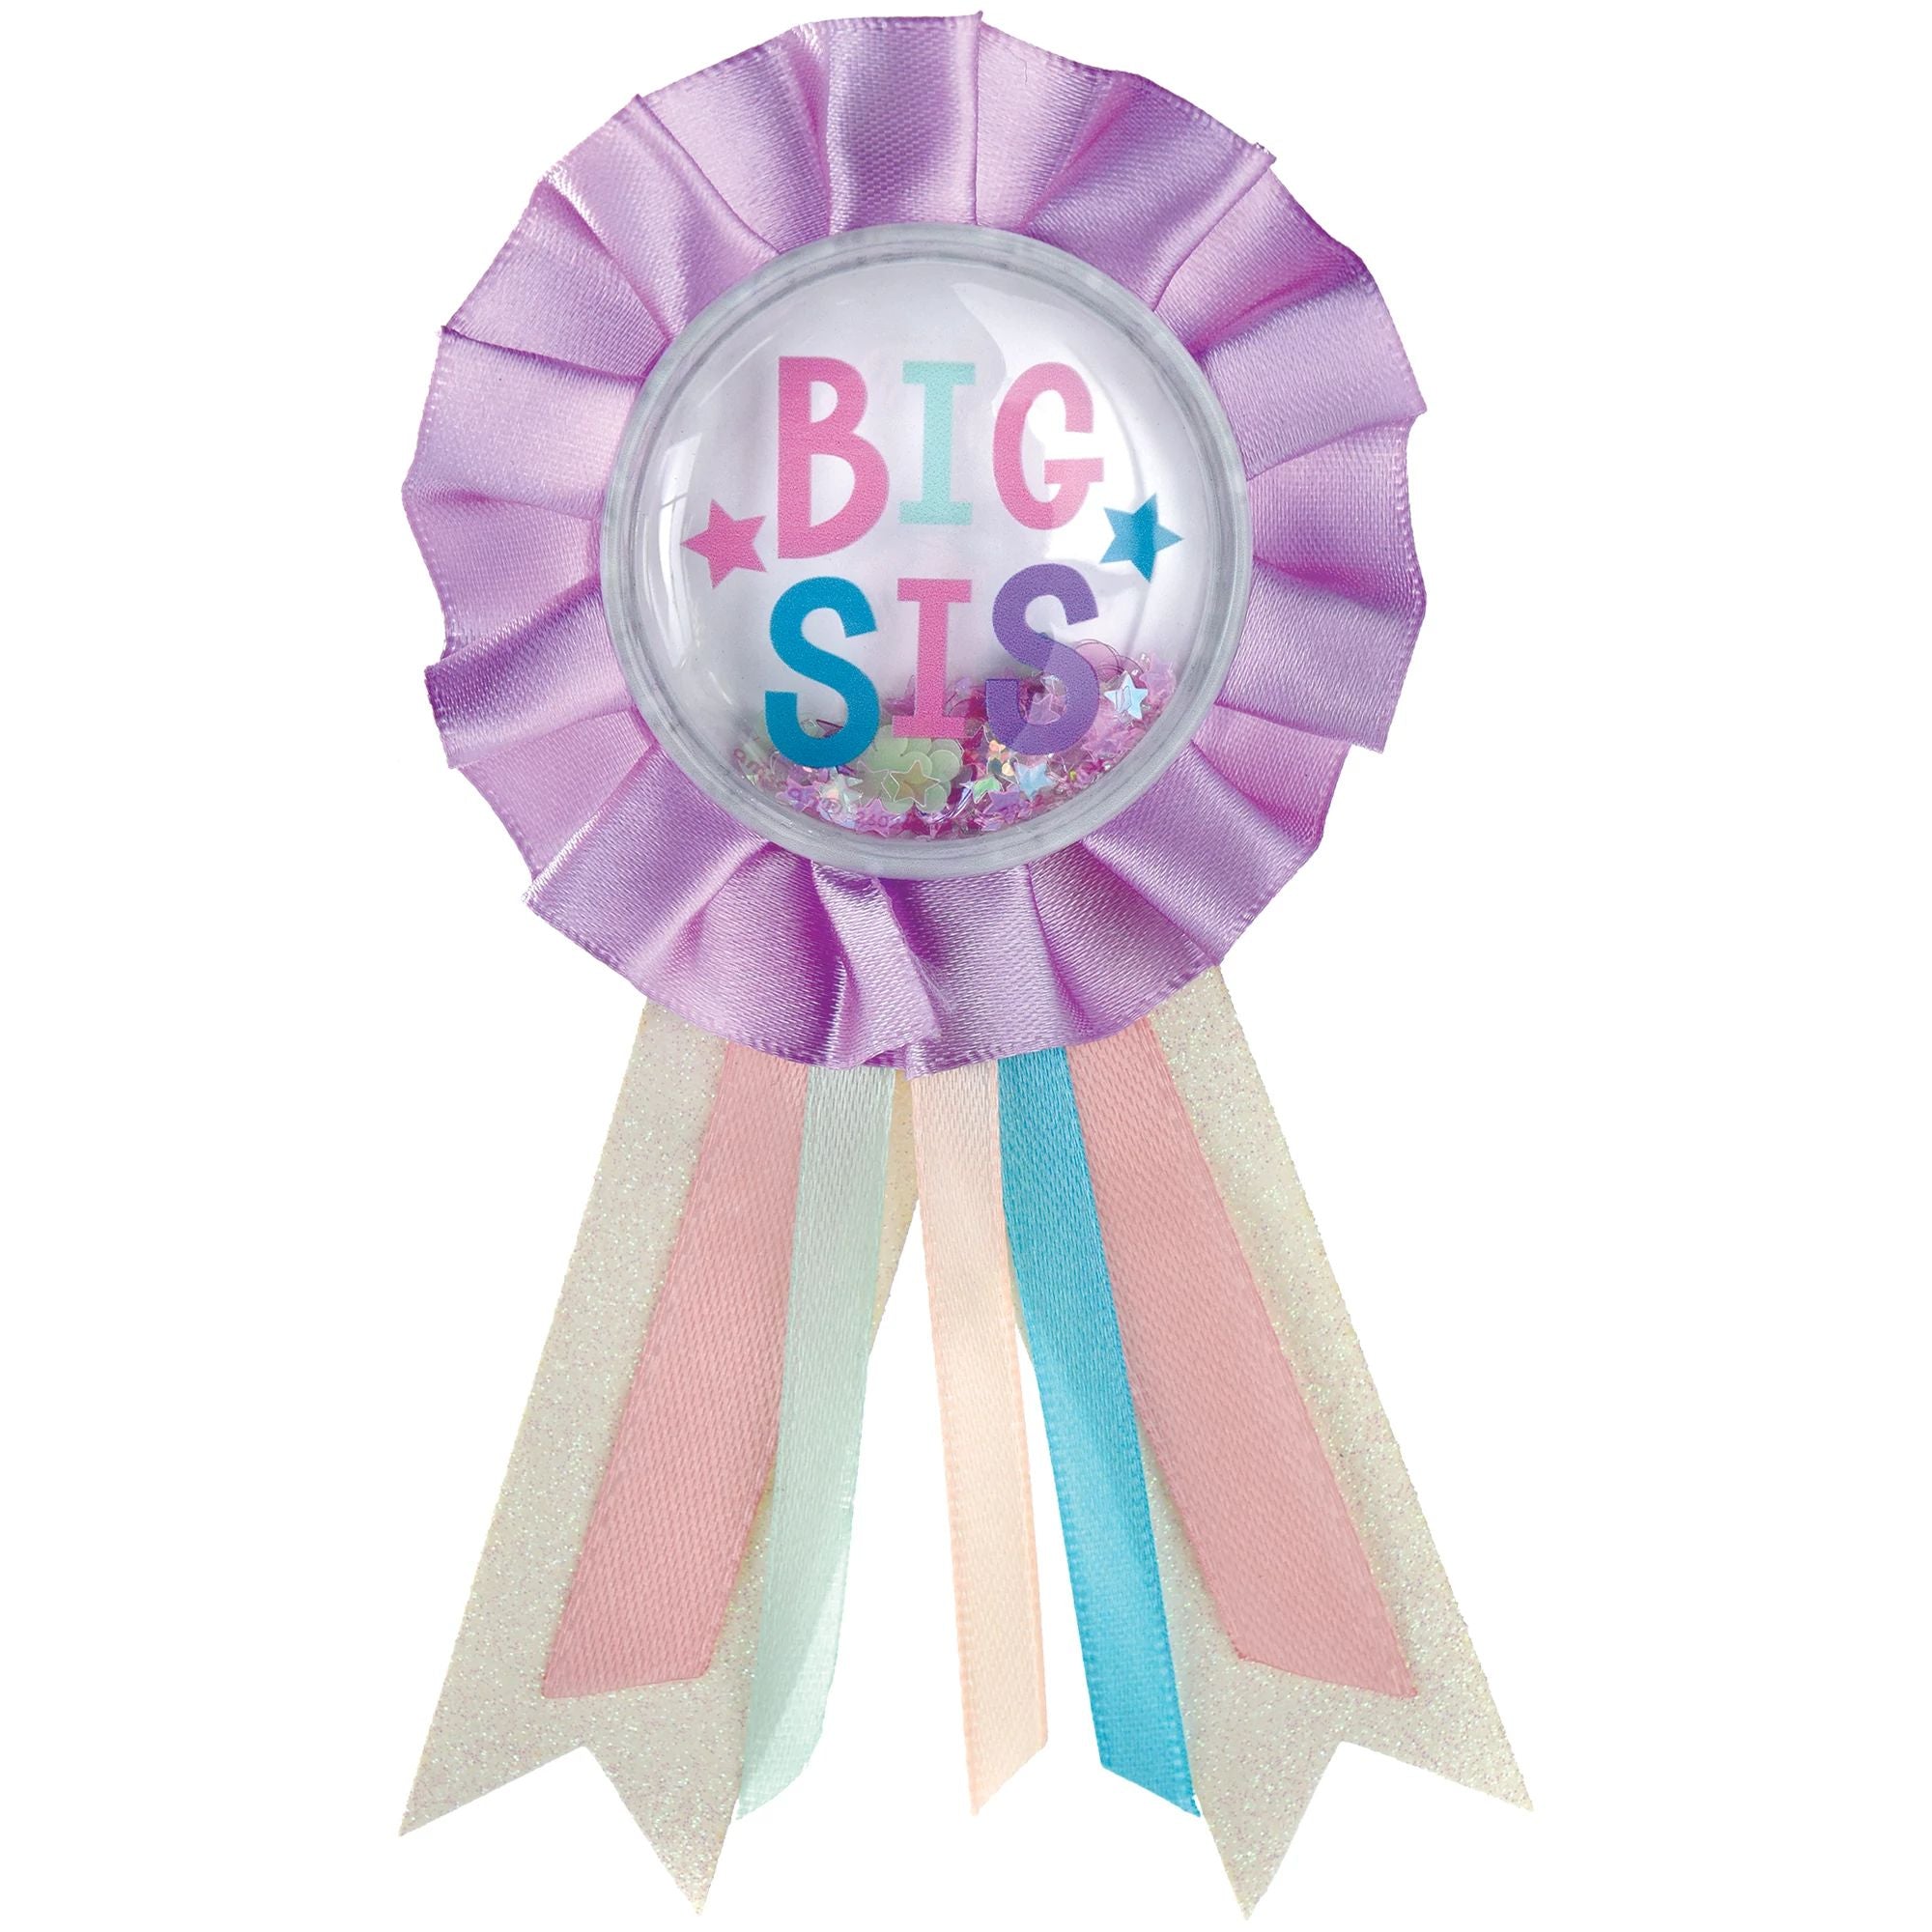 Big Sis Award Ribbon